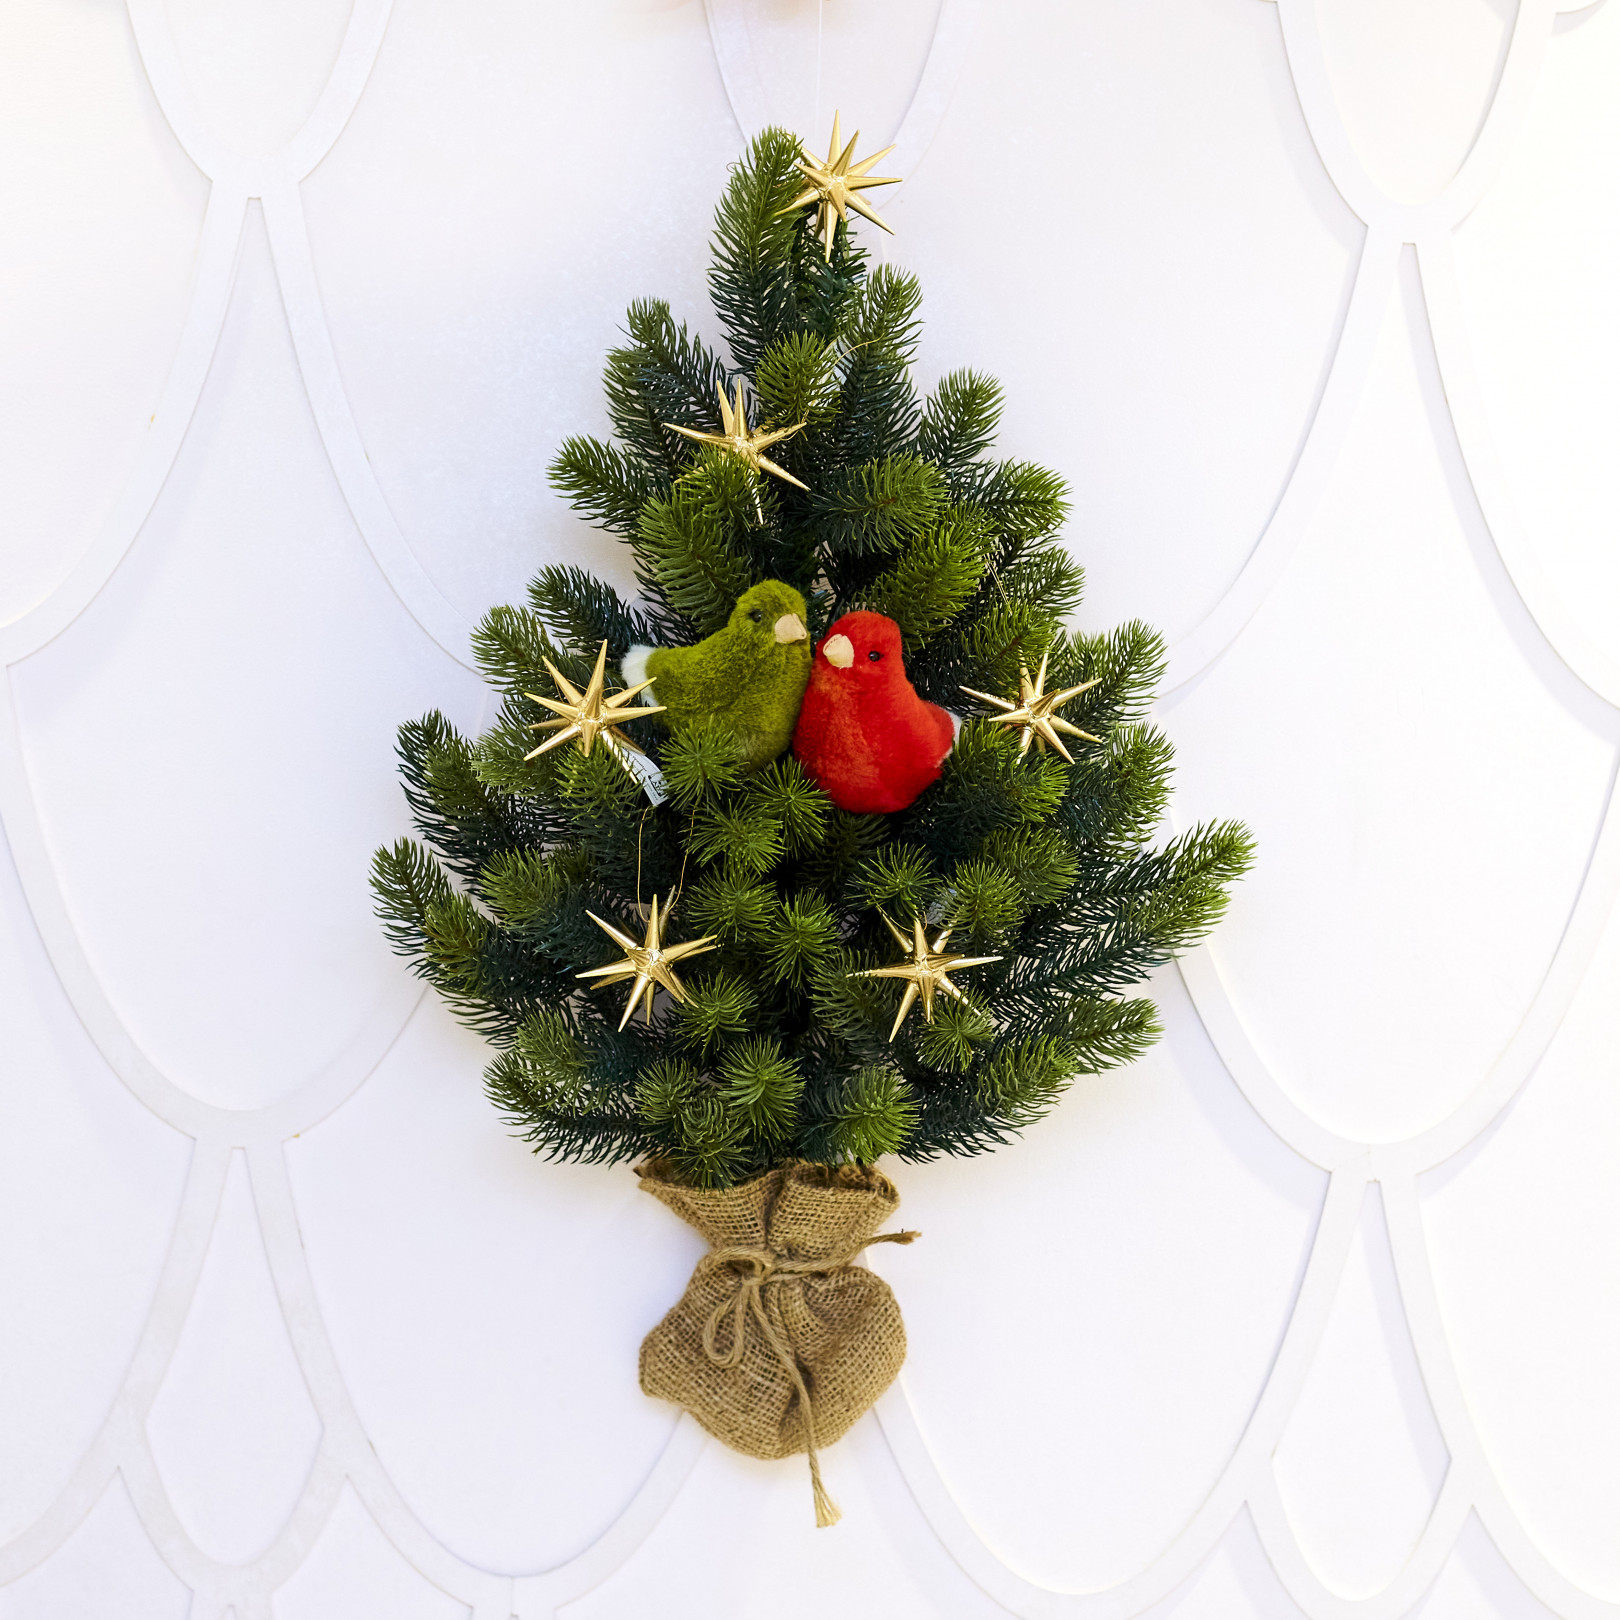 クリスマスツリーの選び方や素敵な飾り付けの方法は 毎年大人気の アトリエ ニキティキ のスペシャリストが解説 Photo 9 10 Fashion Headline